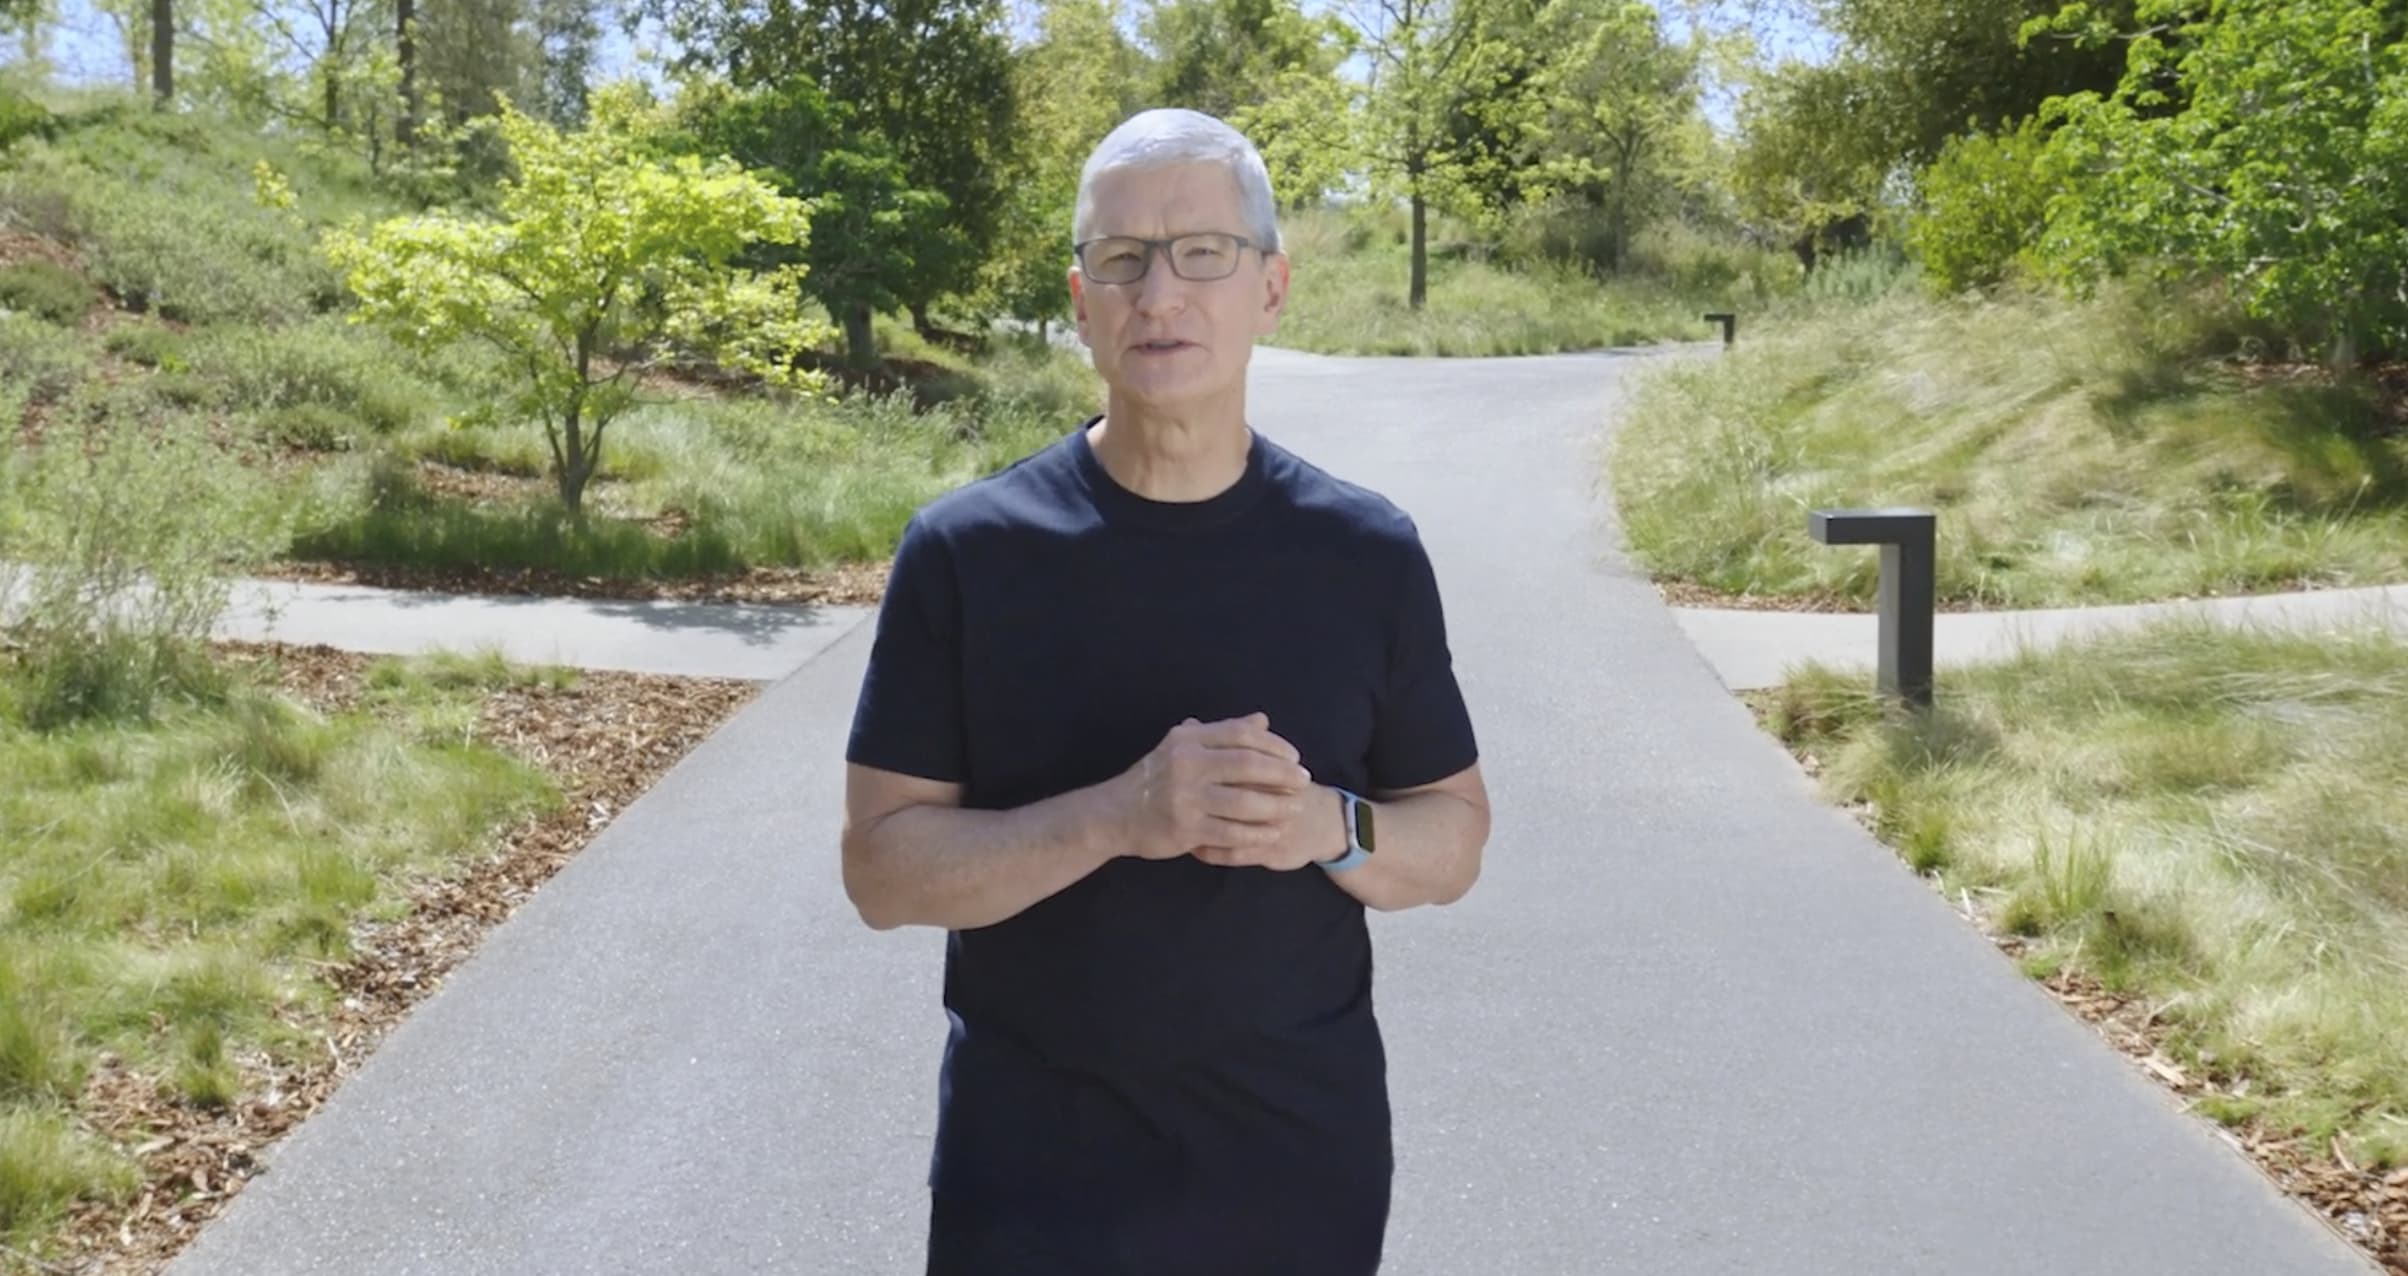 الإستراتيجية الرئيسية للرئيس التنفيذي لشركة Apple ، Tim Cook لتصفية ذهنه: الخروج